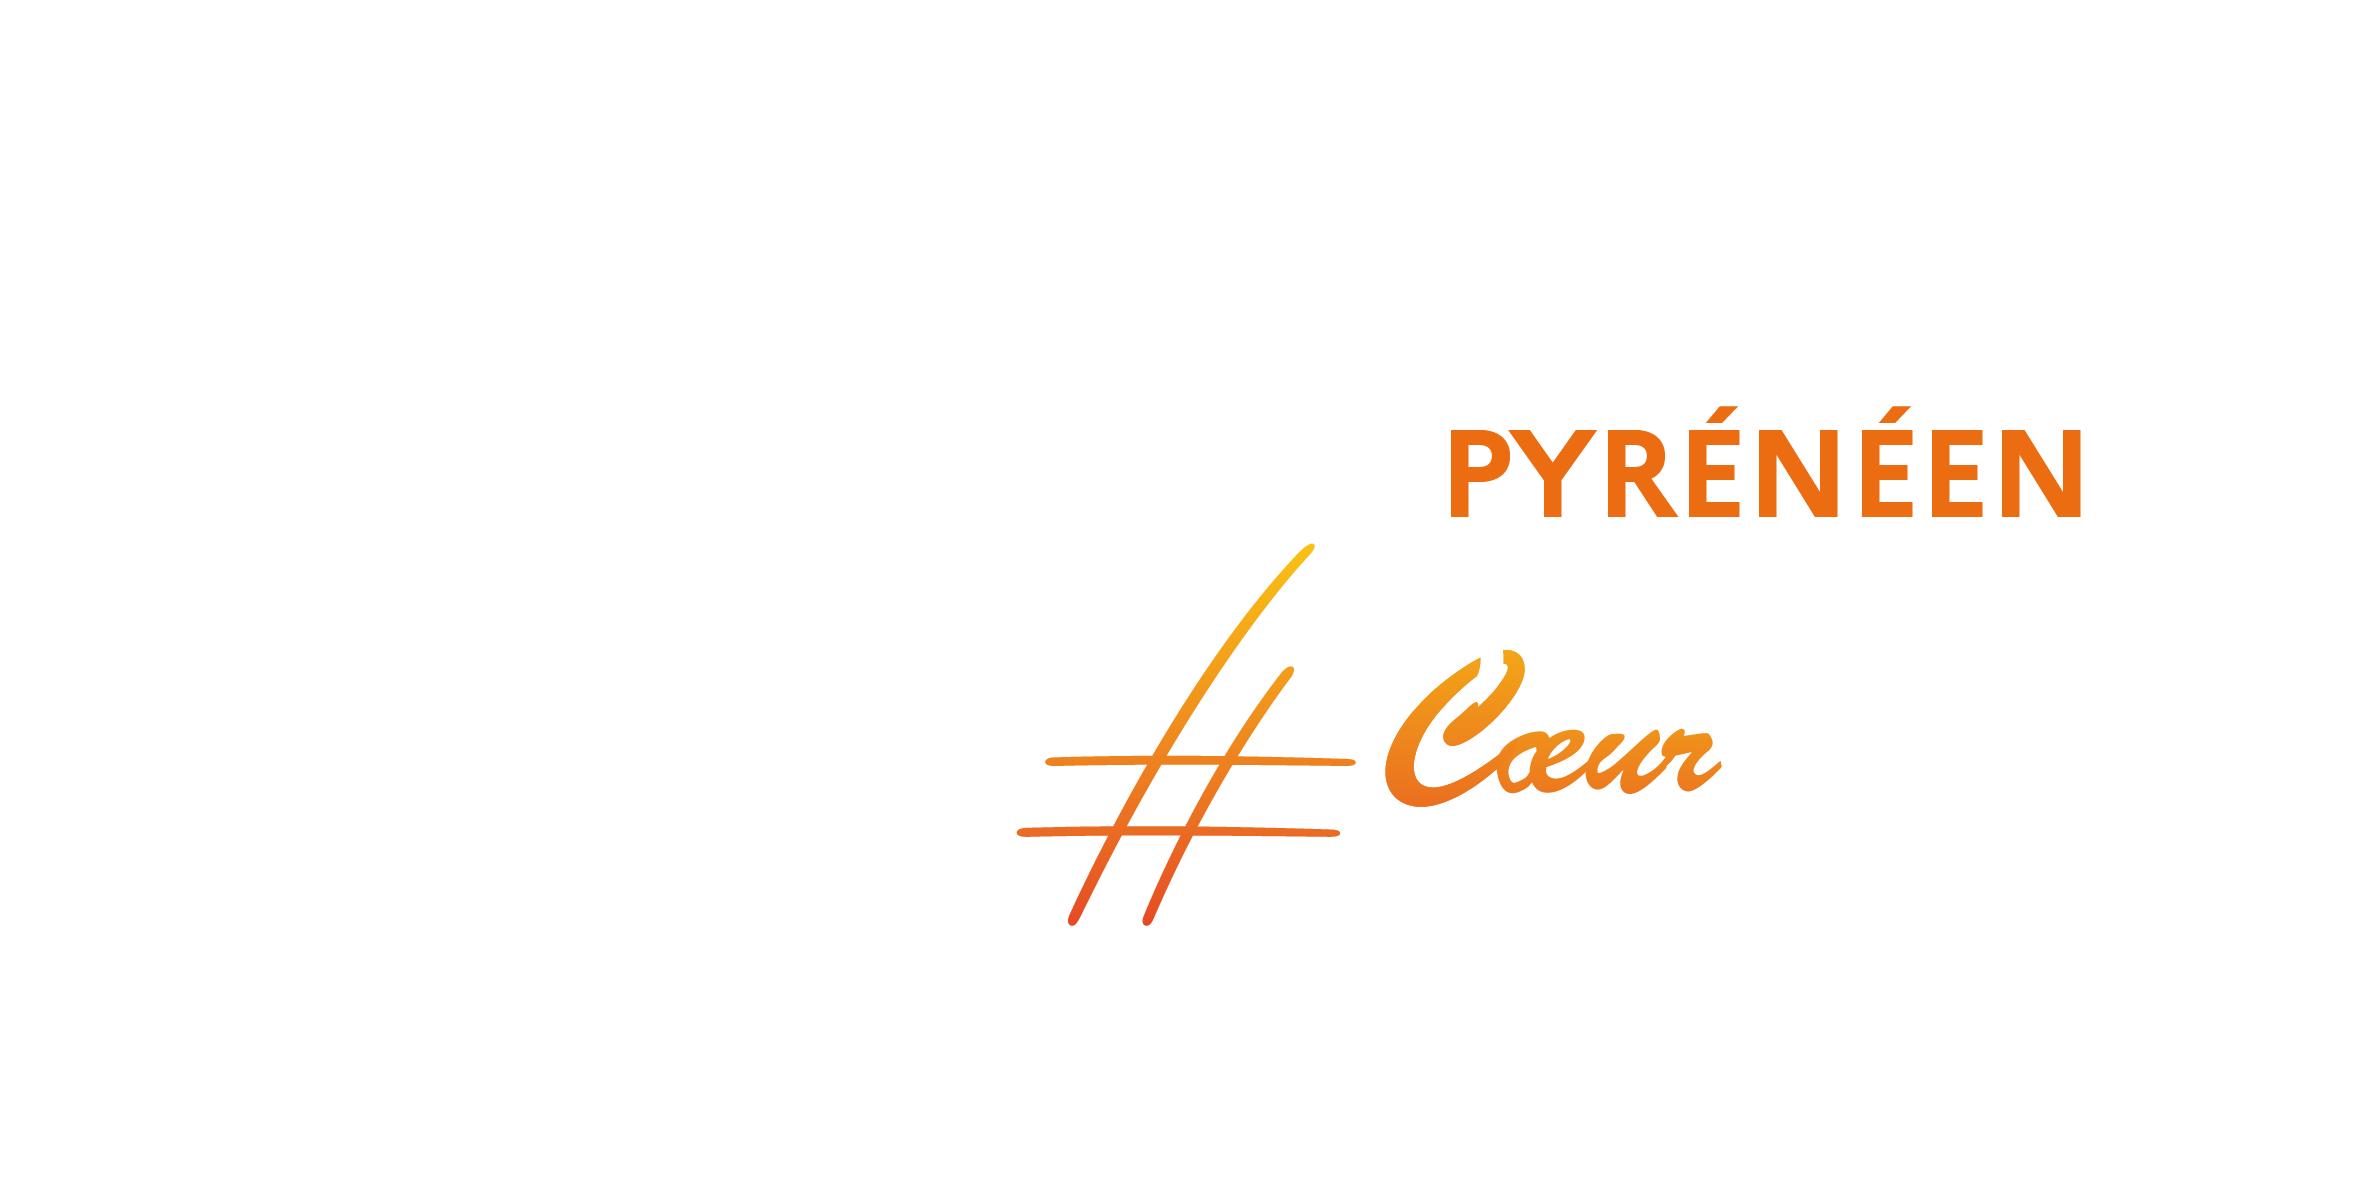 Chateau fort - Musée pyrénéen